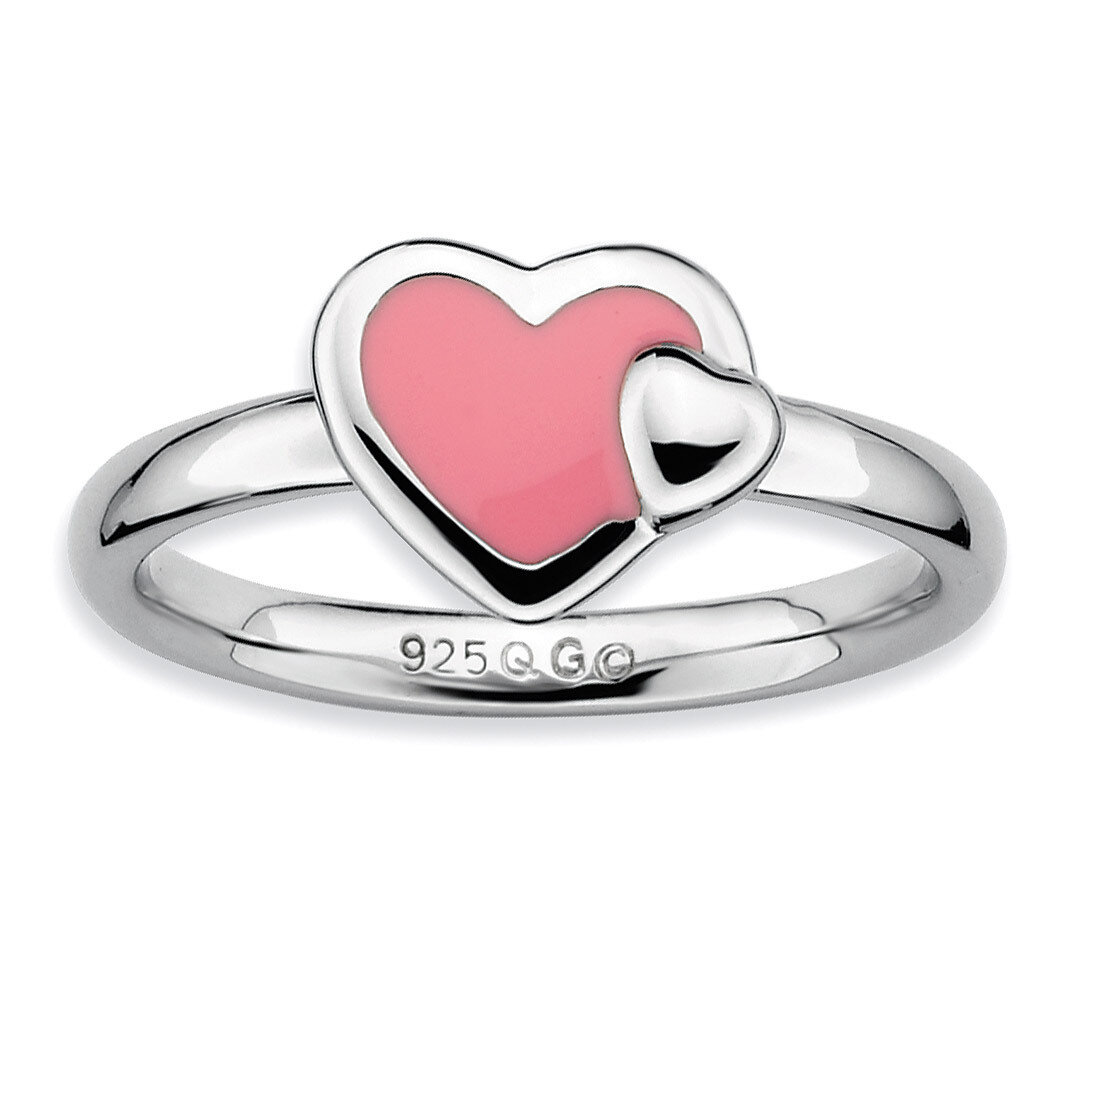 Pink Enameled Heart Ring - Sterling Silver Polished QSK110